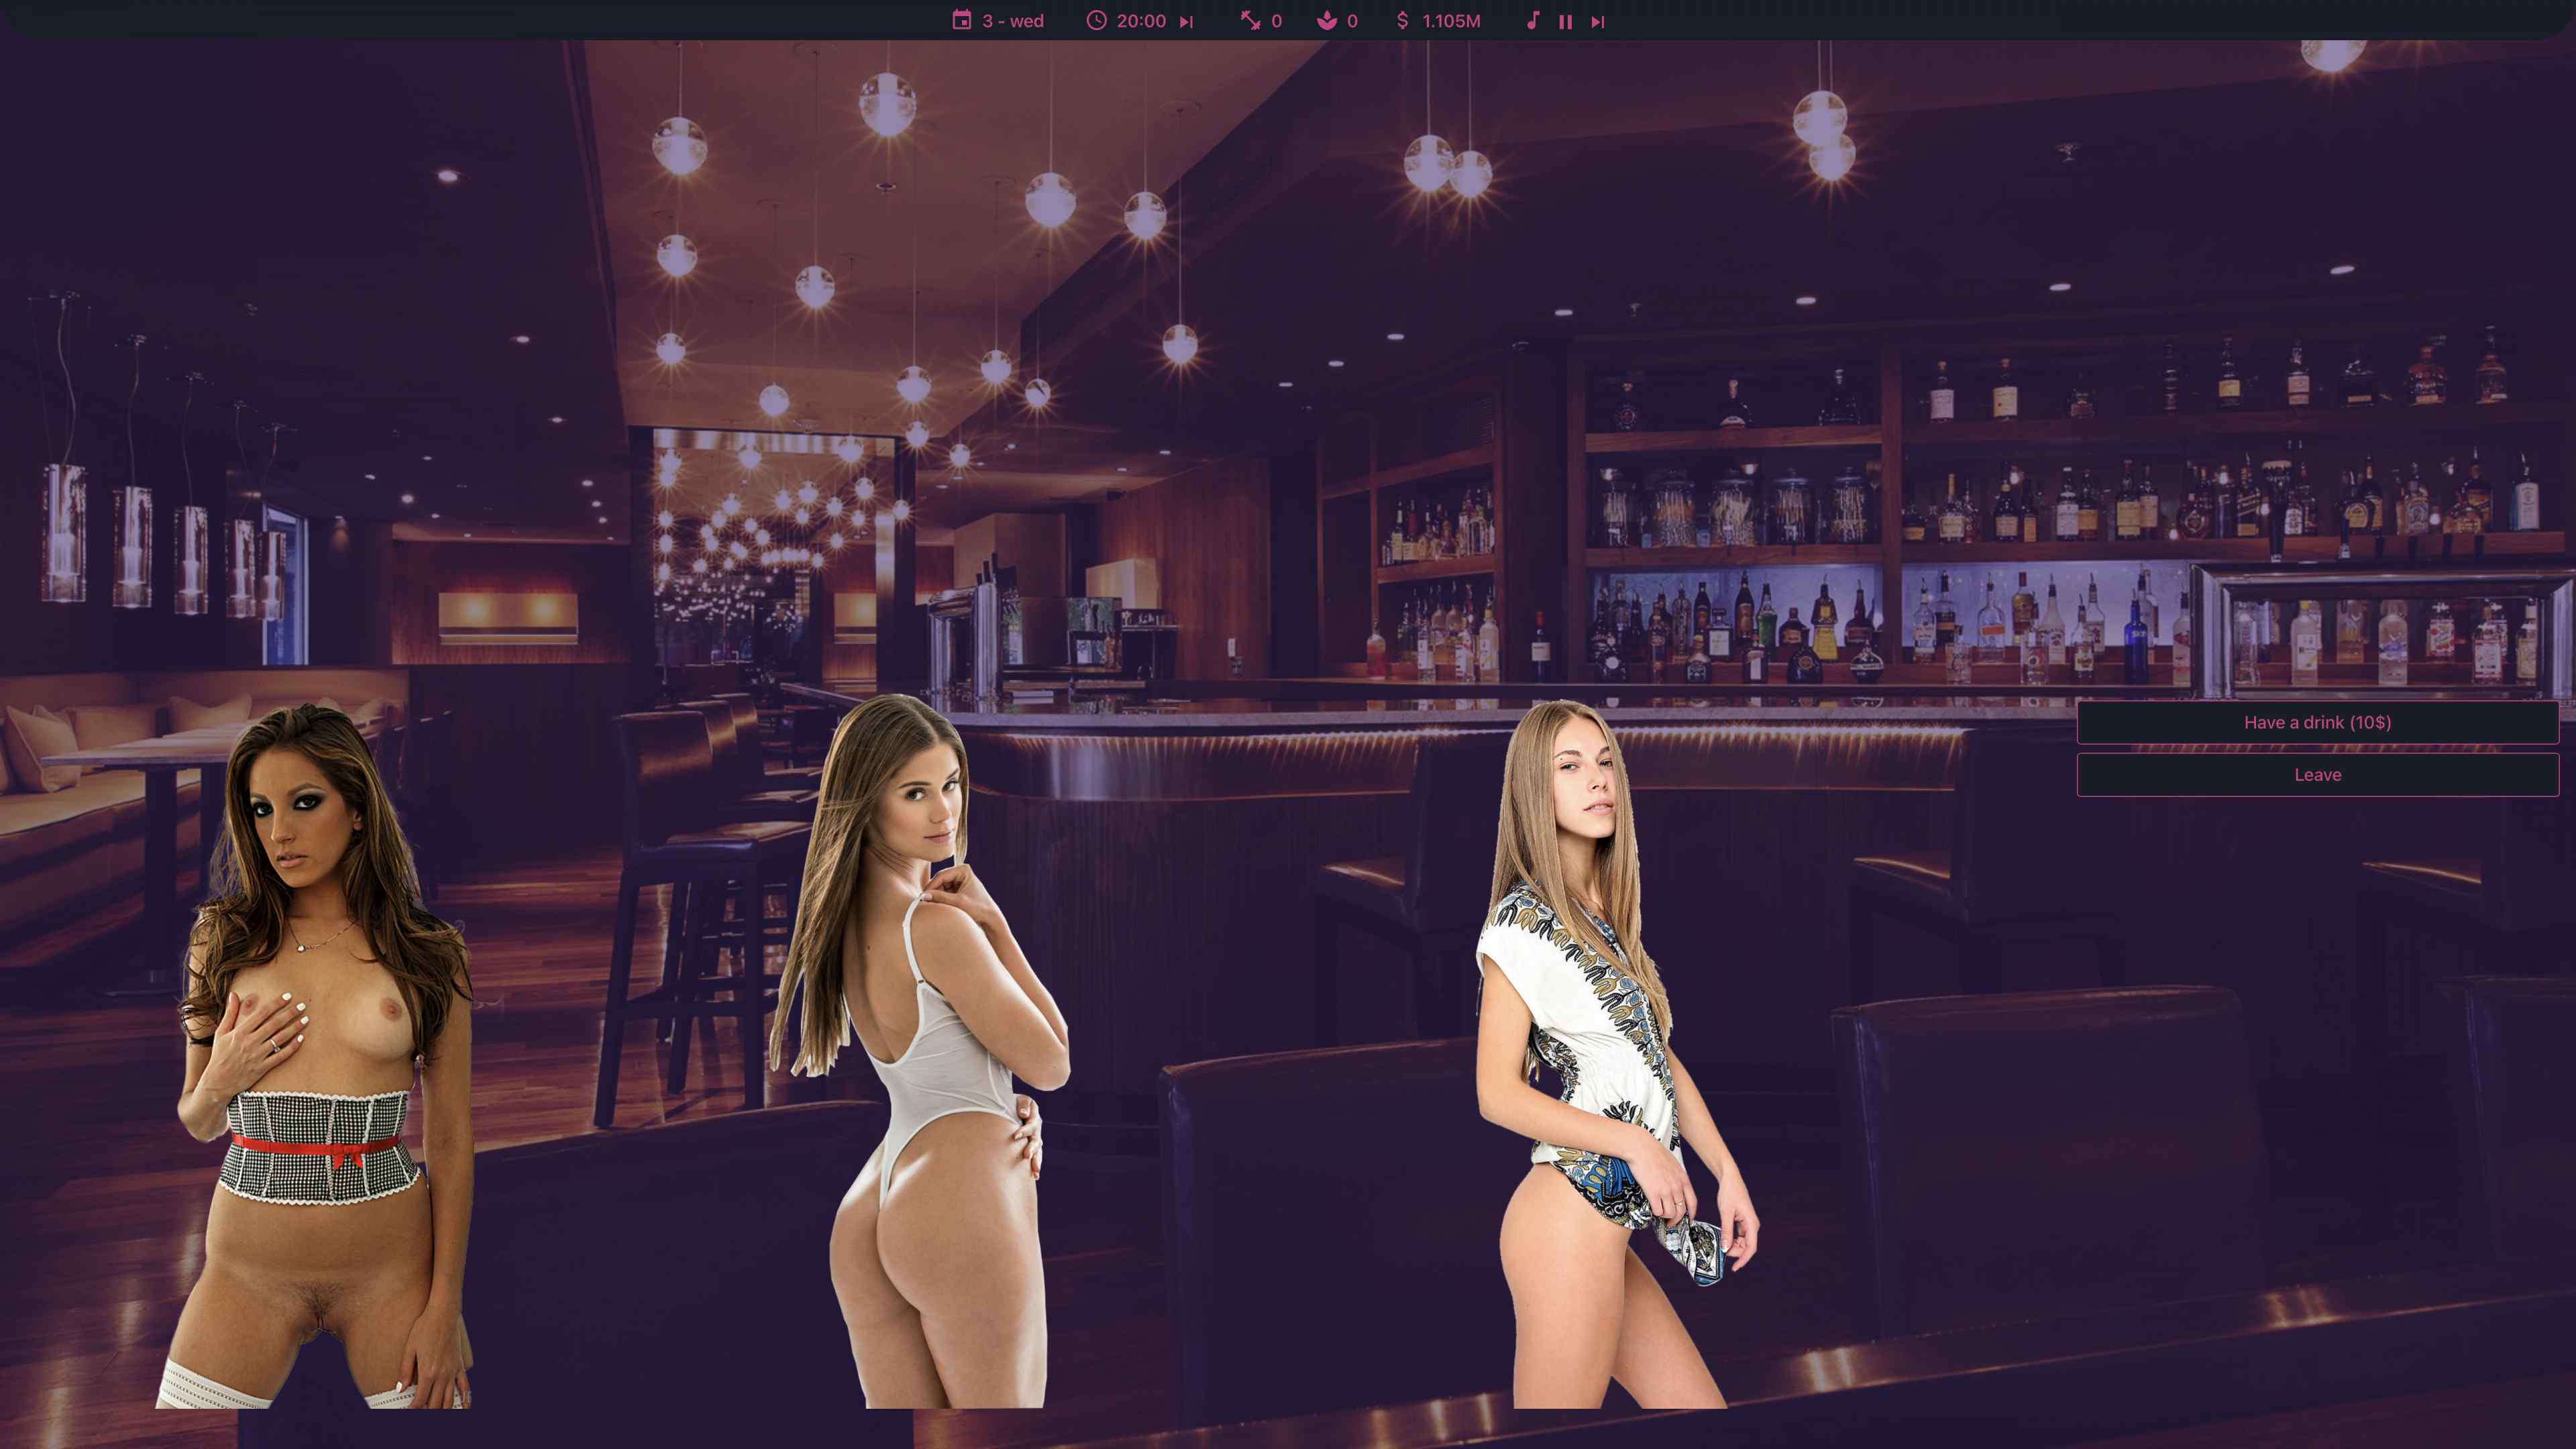 The Ultimate Stripper Club